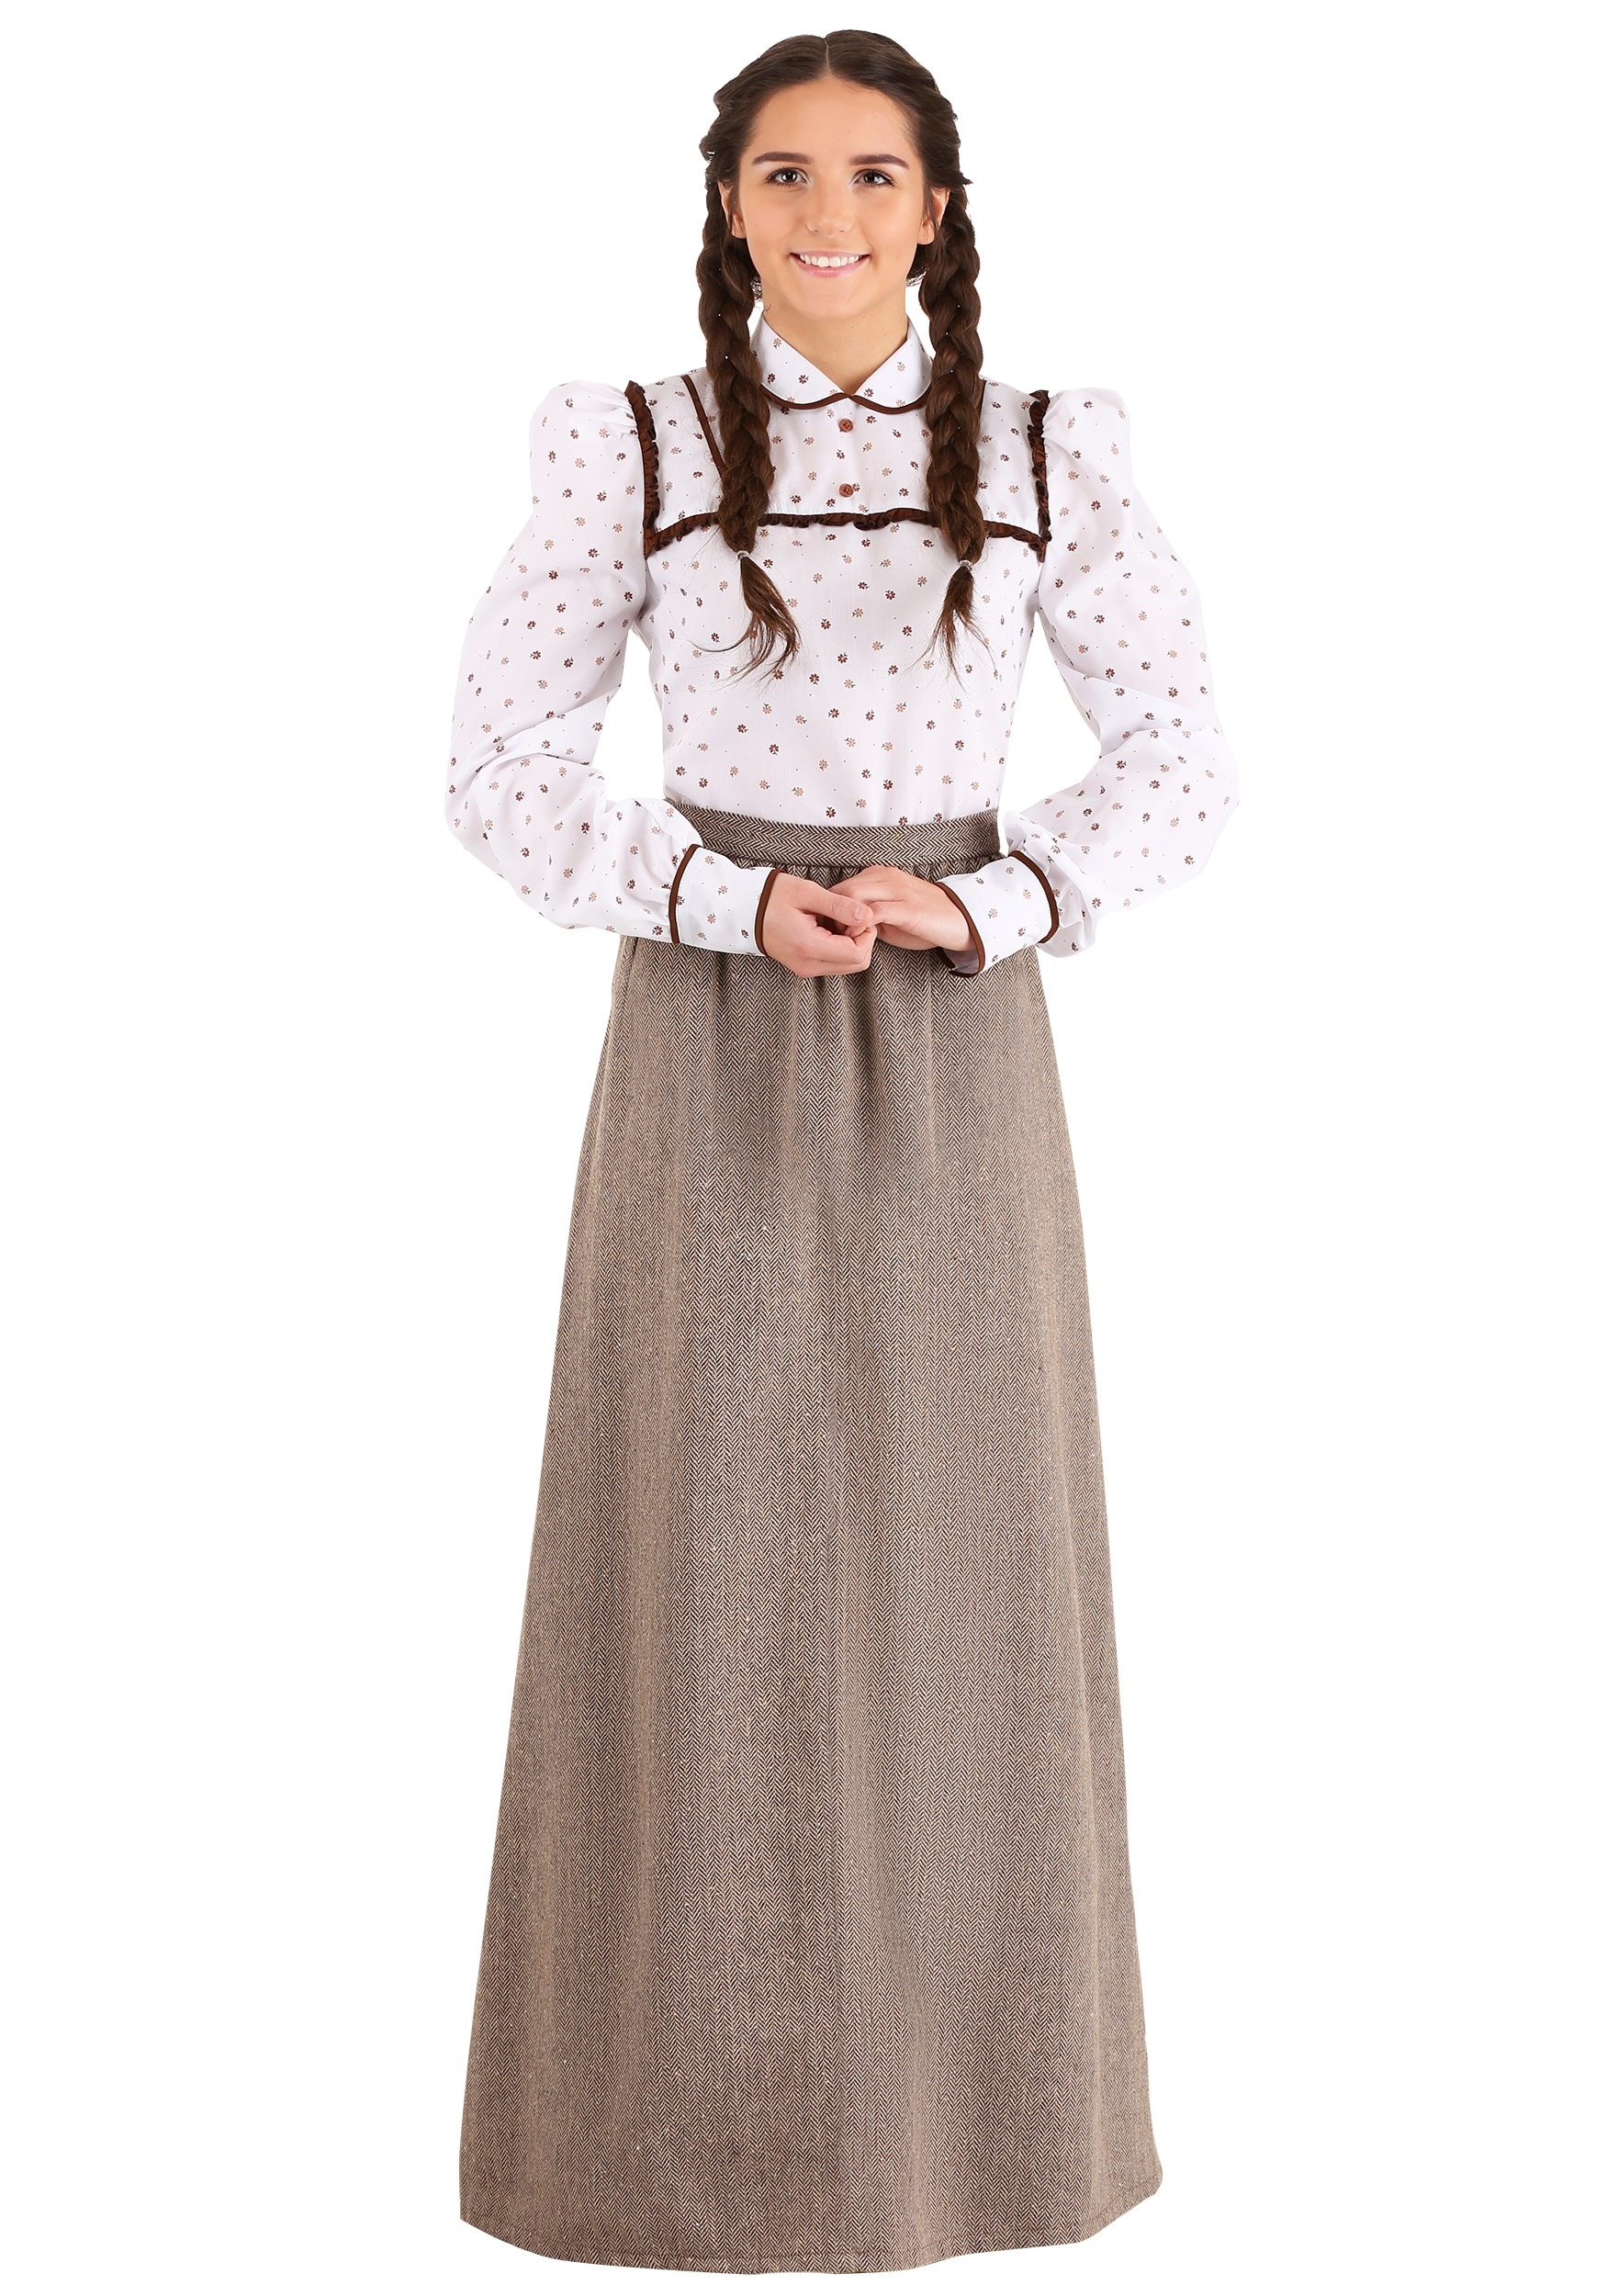 Westward Pioneer Fancy Dress Costume For Women